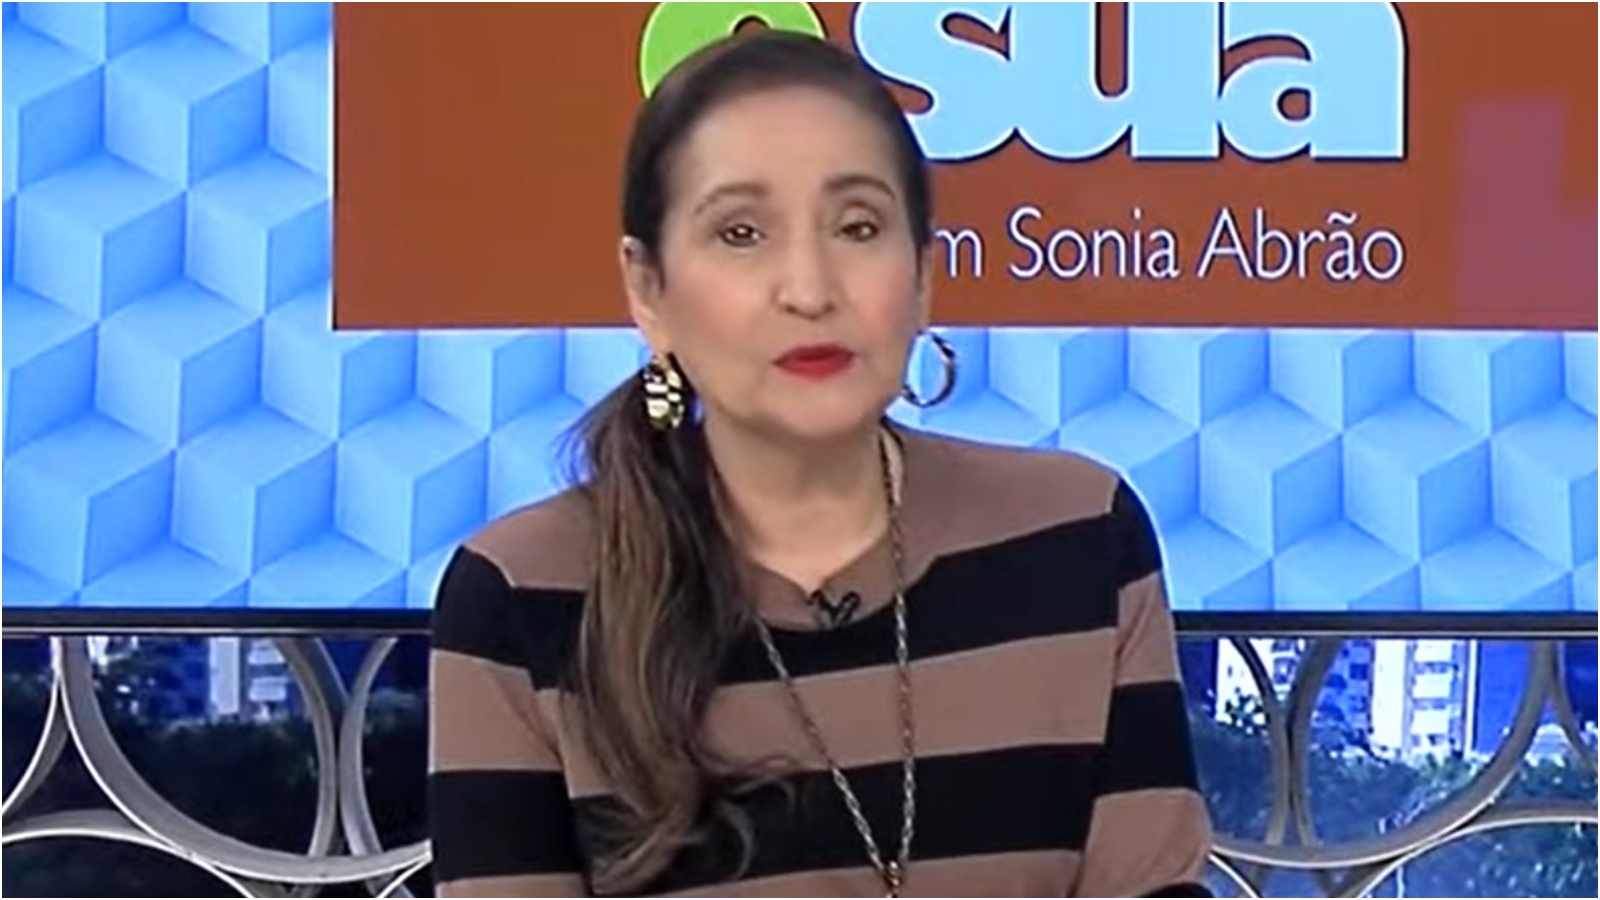 Saiba quando Sonia Abrão retorna à TV após ser afastada por problema de saúde - ISTOÉ Independente